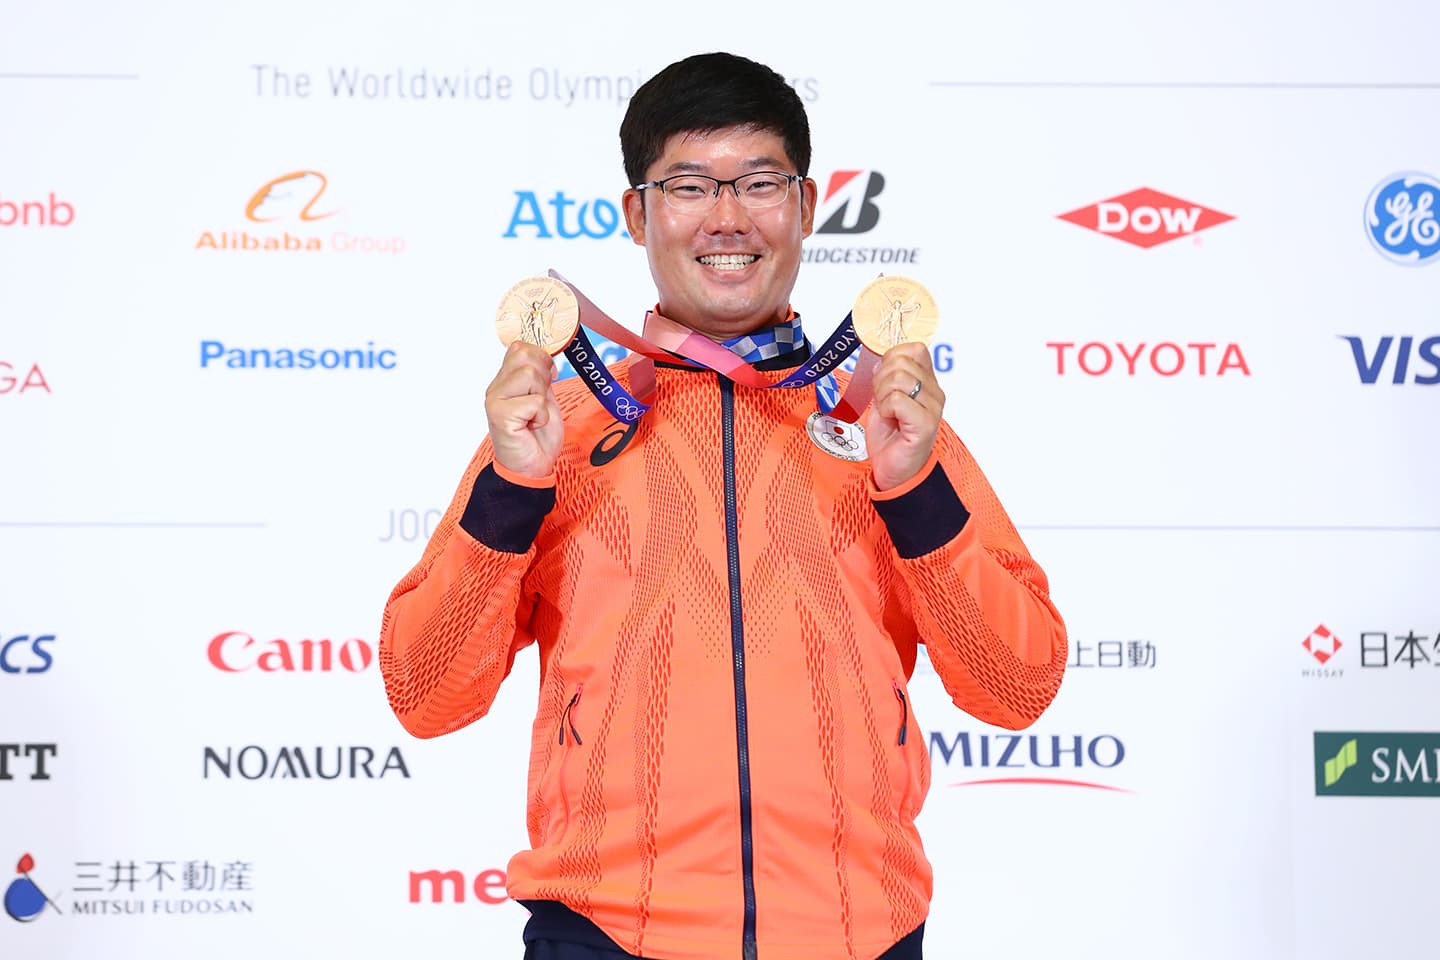 東京2020大会で2つの銅メダルを獲得した古川高晴選手